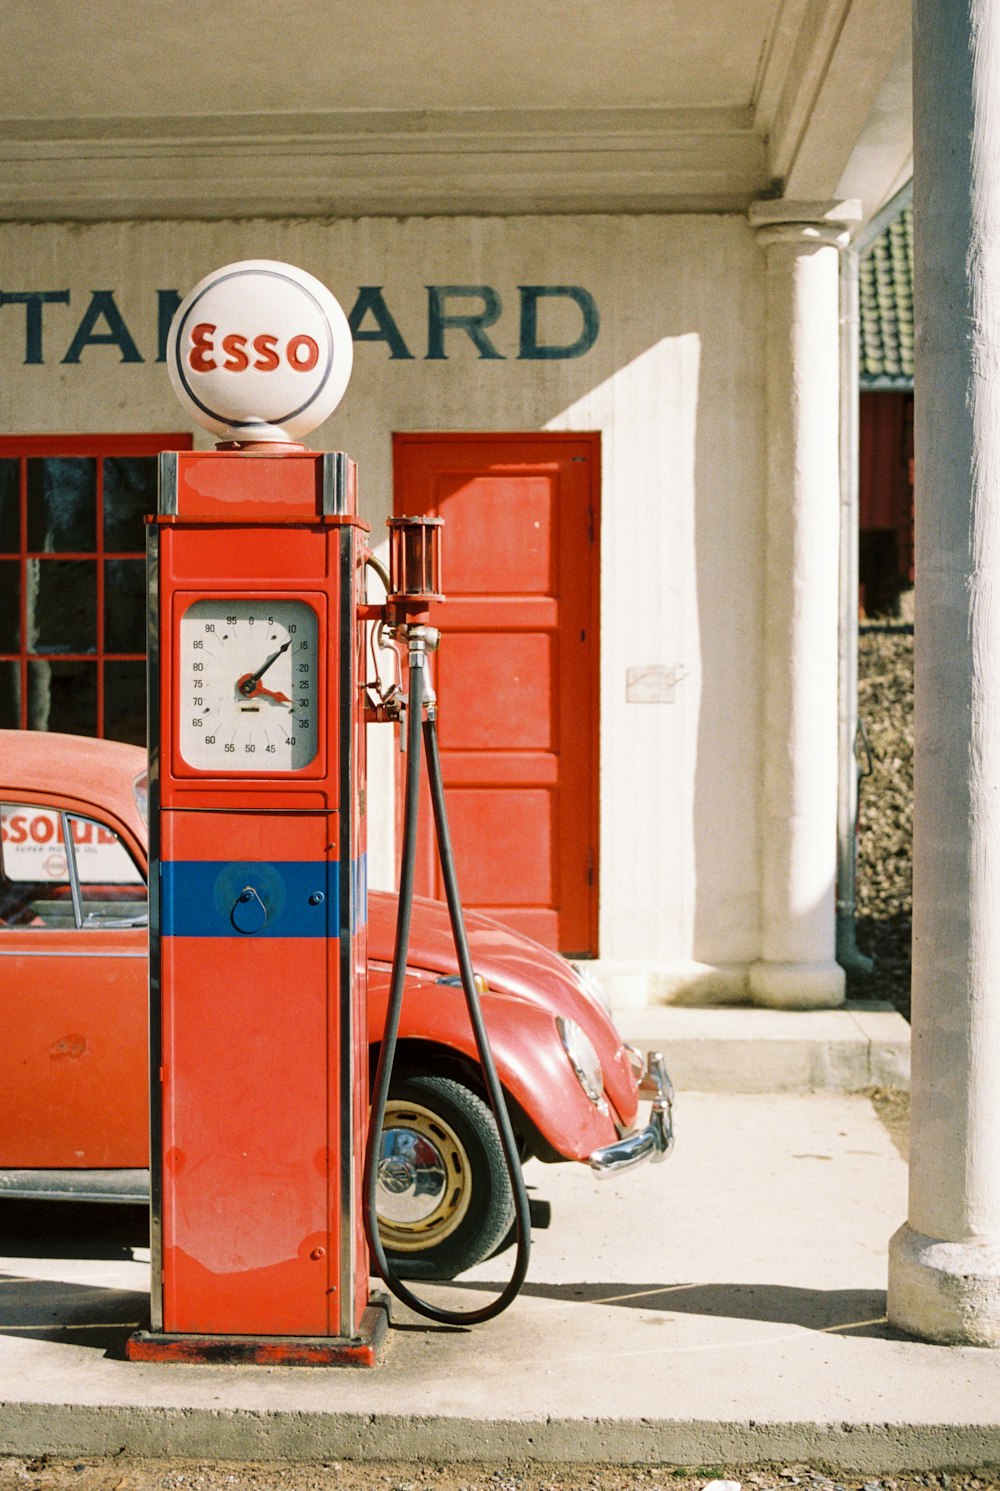 Un coche rojo aparcado junto a una bomba de gasolina